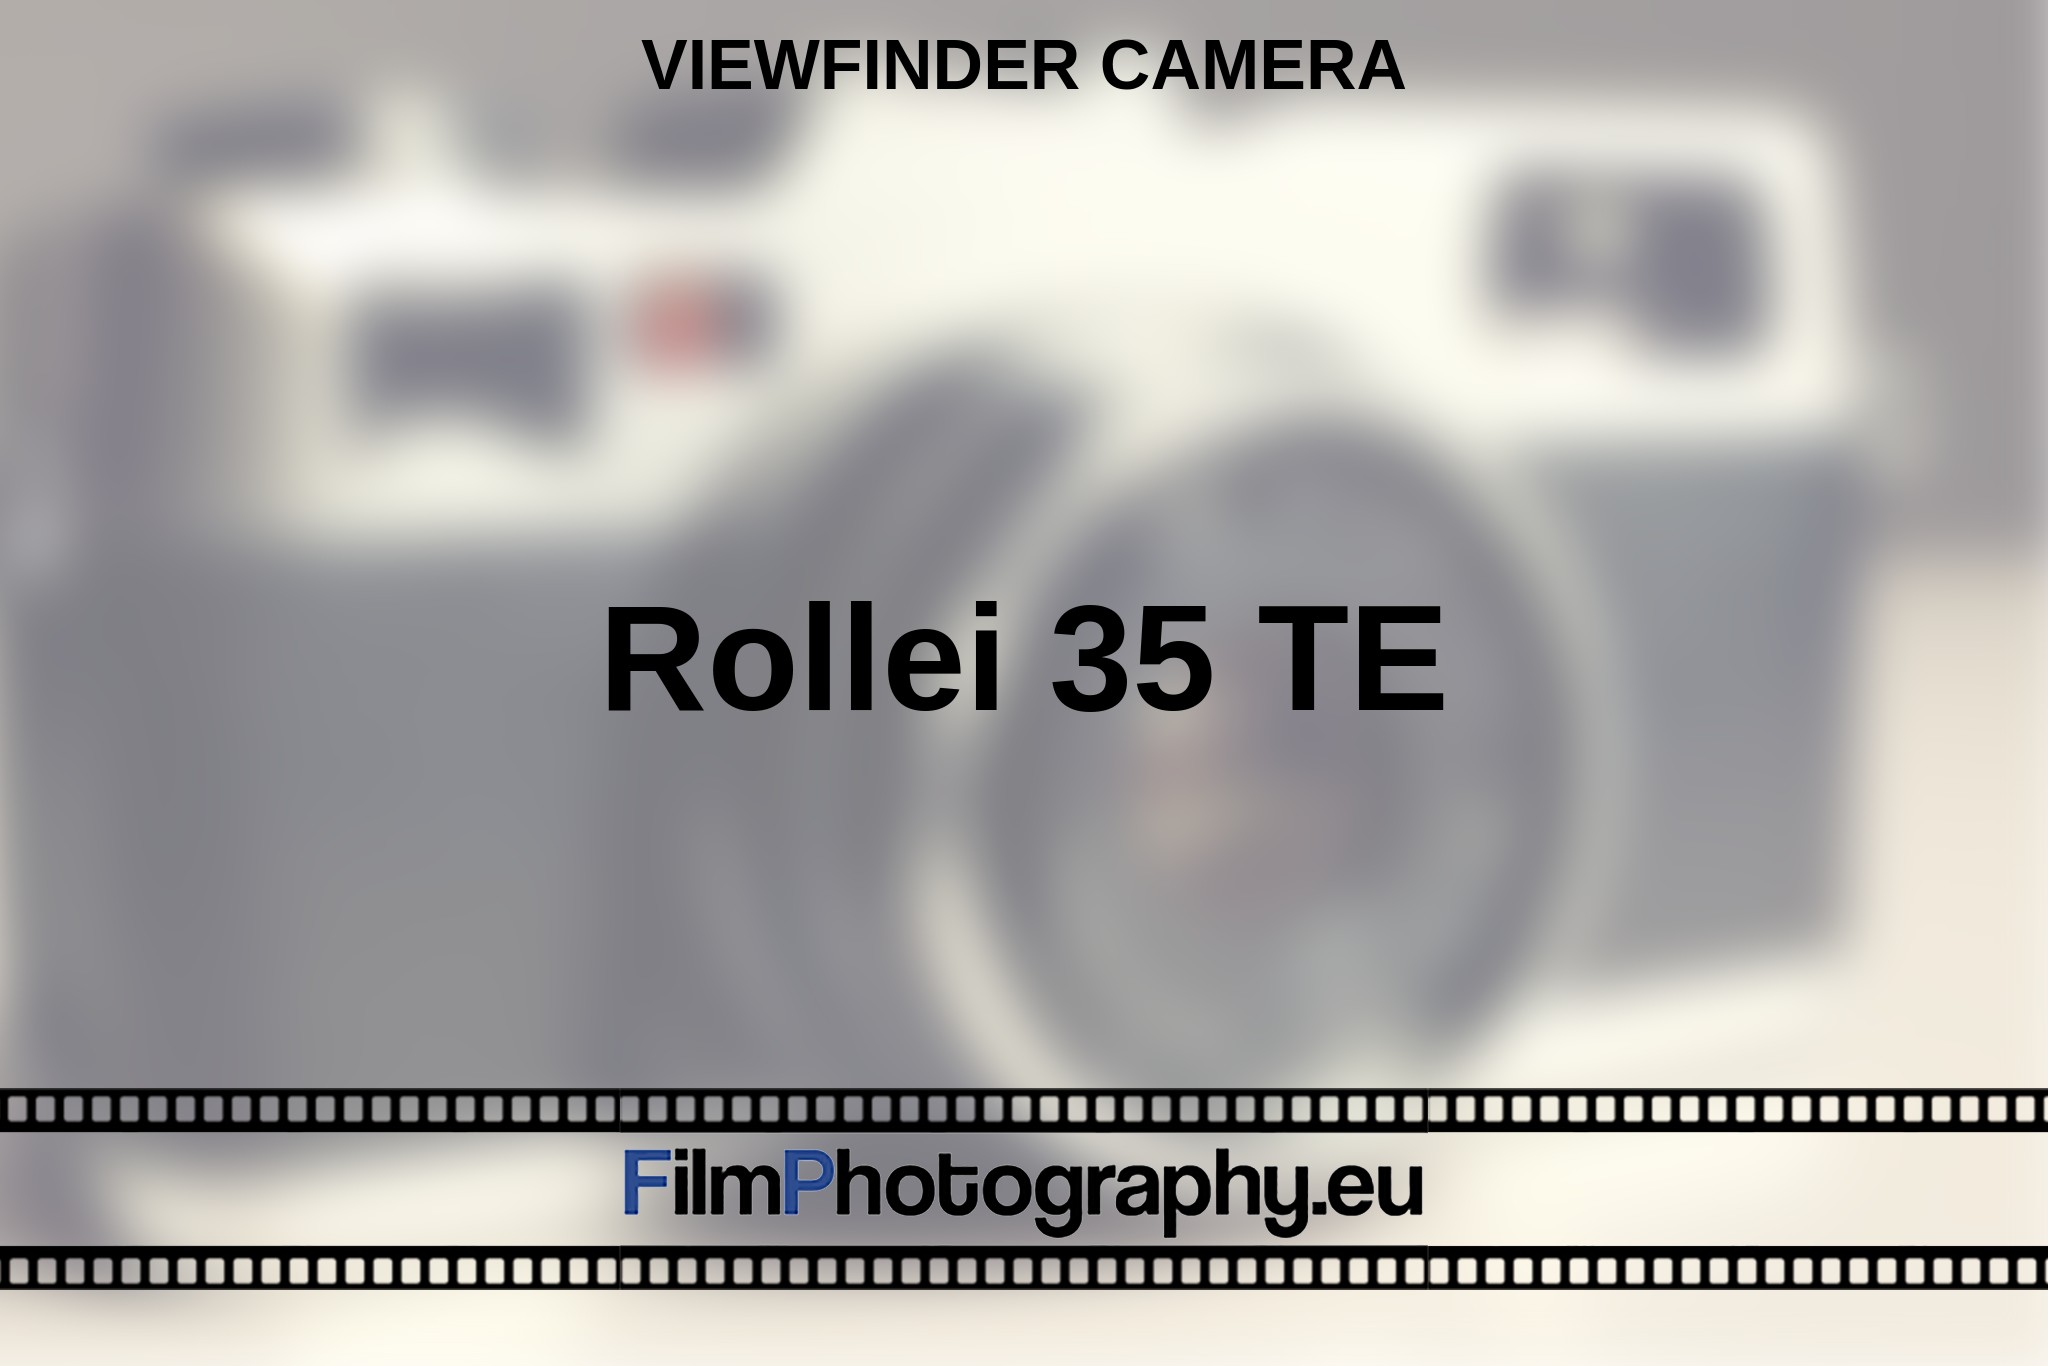 rollei-35-te-viewfinder-camera-en-bnv.jpg